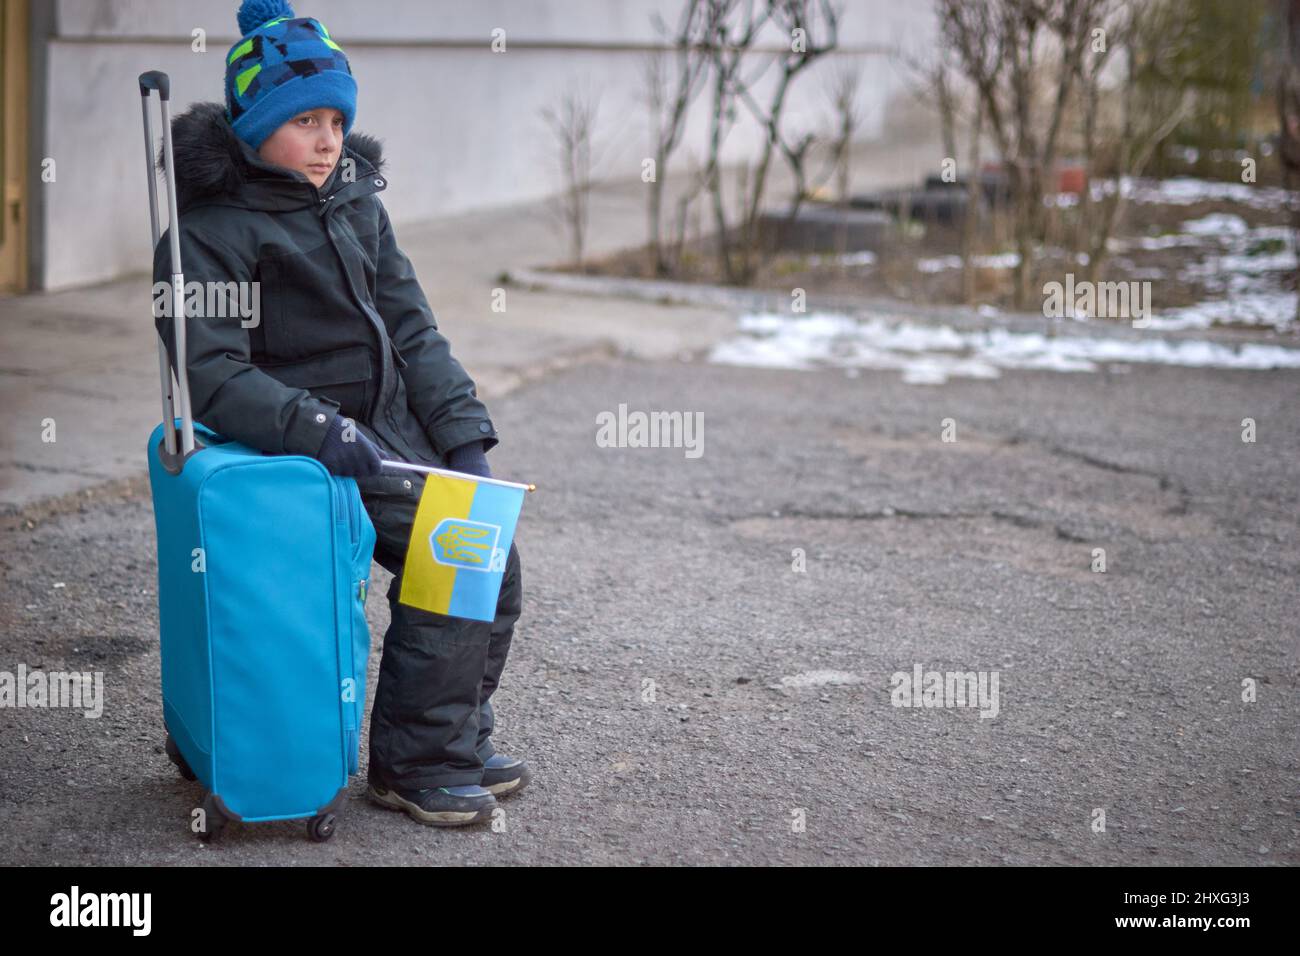 Évacuation des civils, triste enfant avec le drapeau de l'Ukraine. Famille de réfugiés d'Ukraine traversant la frontière. Main tenant un passeport au-dessus des bagages avec drapeau jaune-bleu. Cessez la guerre, soutenez l'Ukraine Banque D'Images